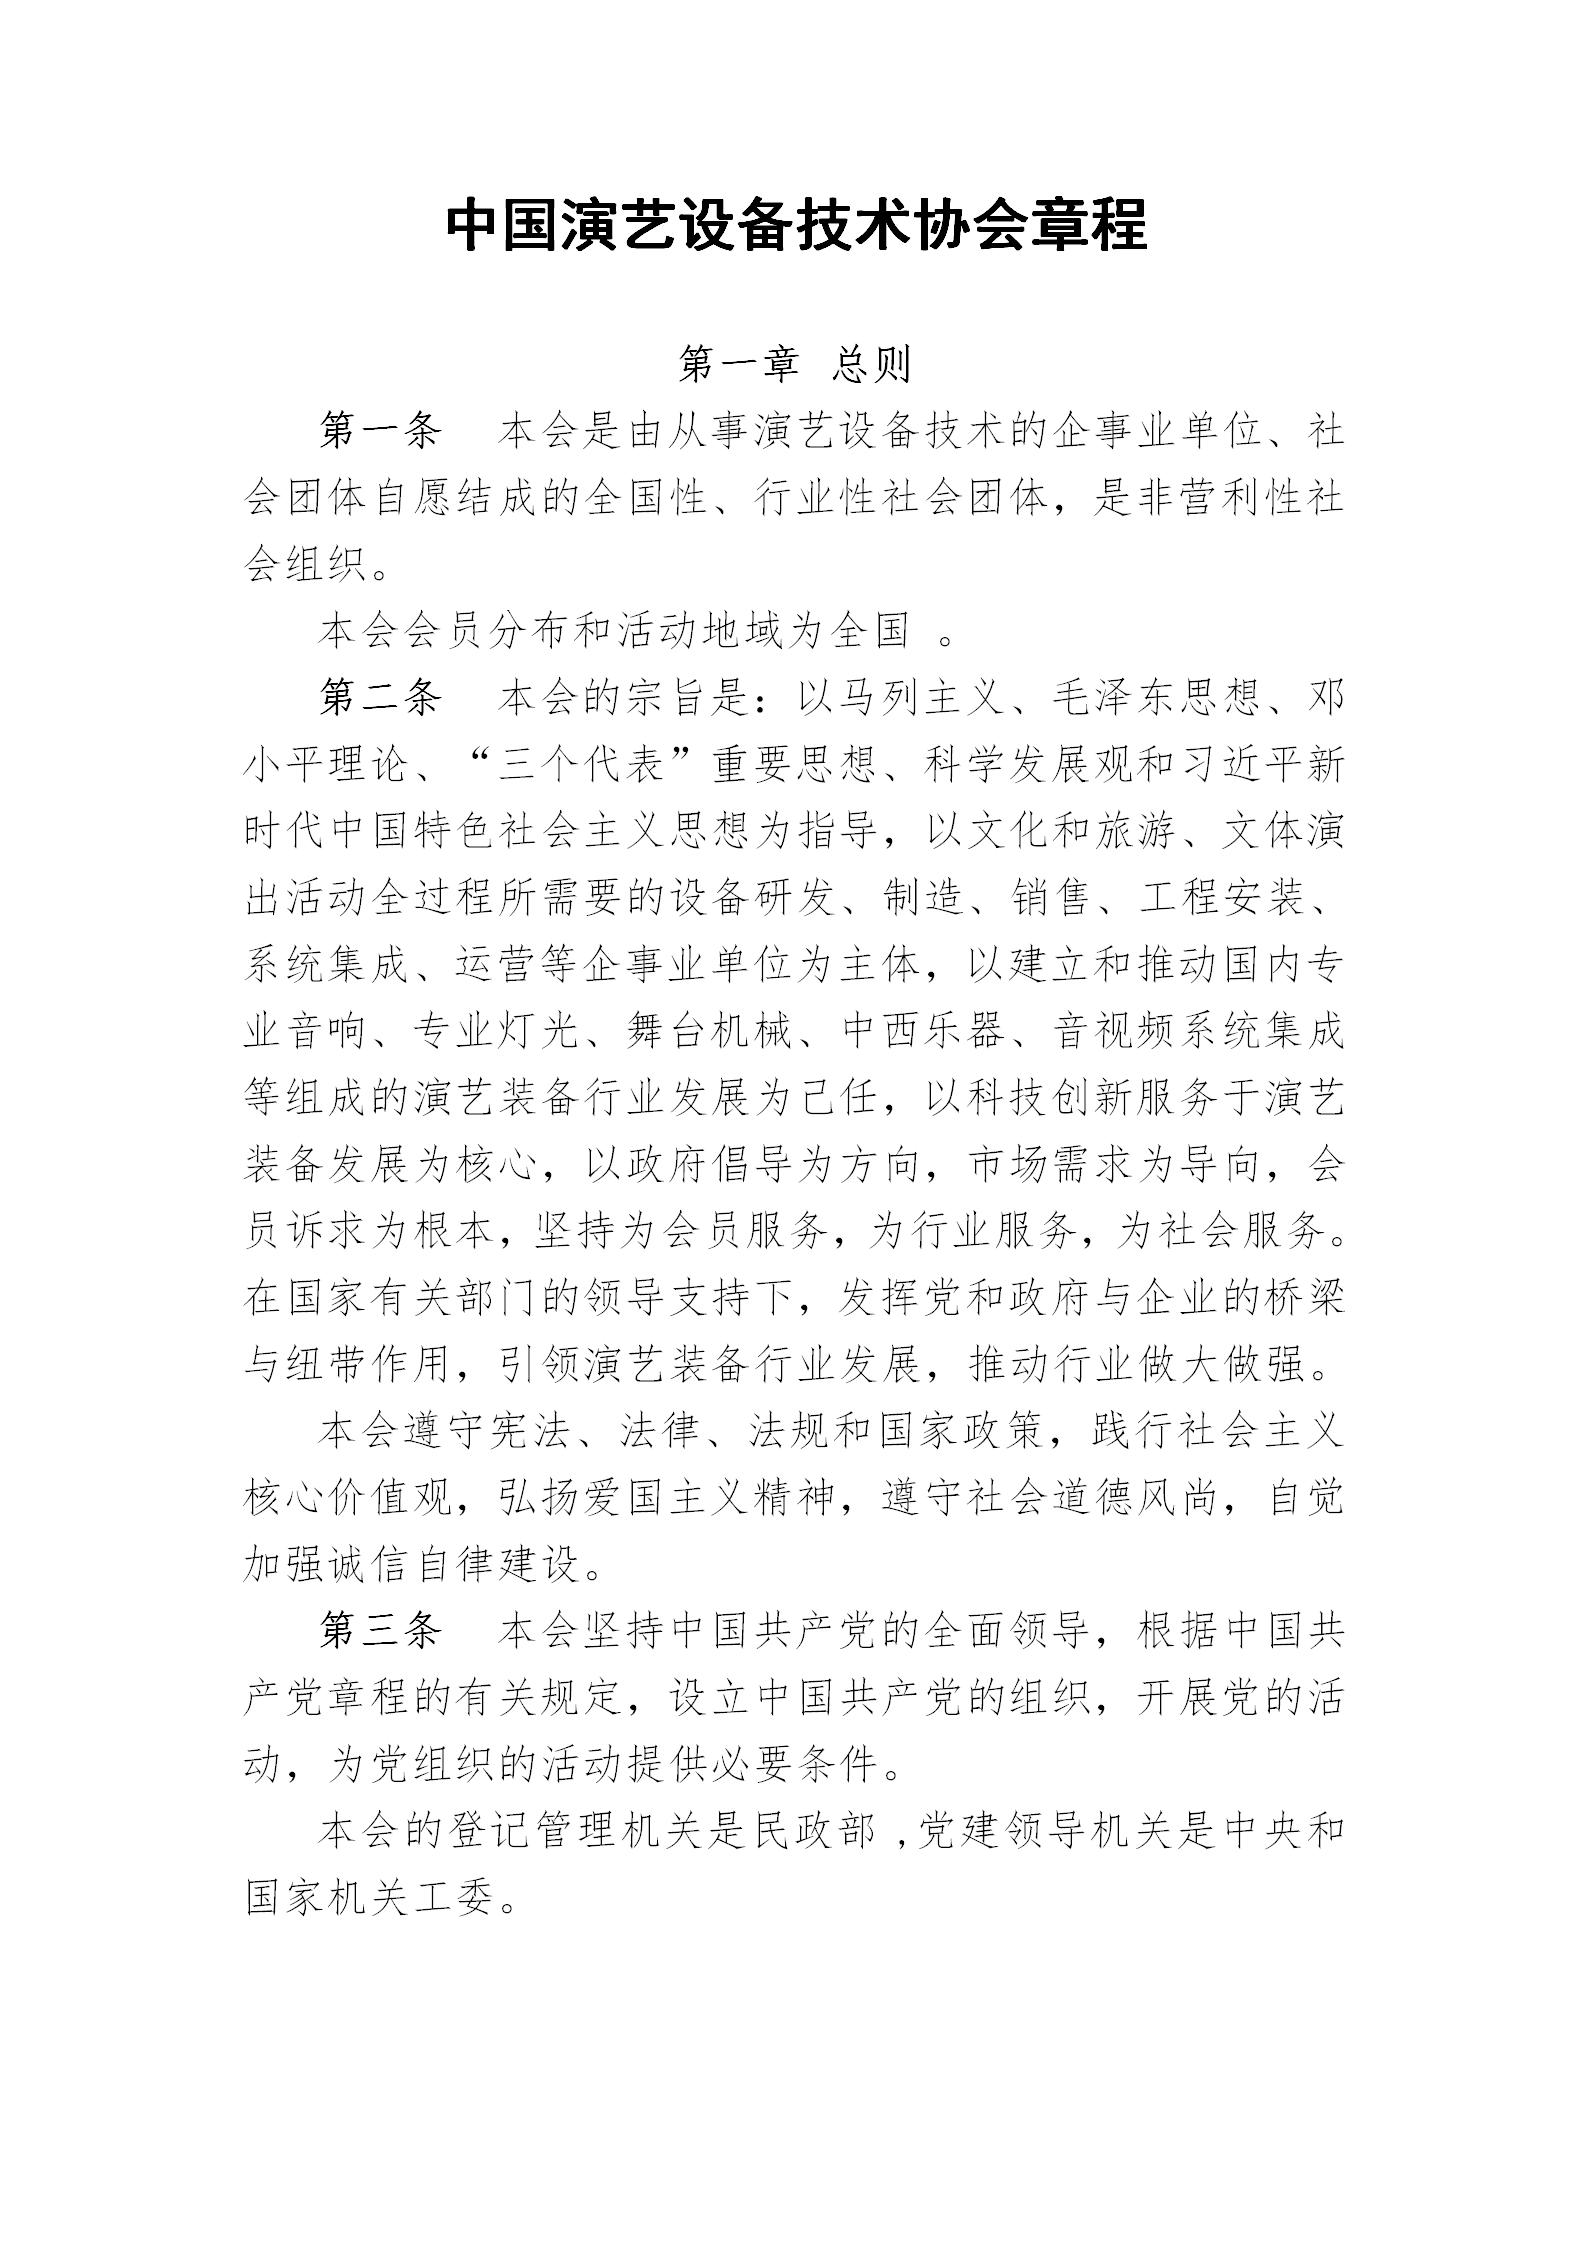 中国演艺设备技术协会章程(定稿)_01.jpg